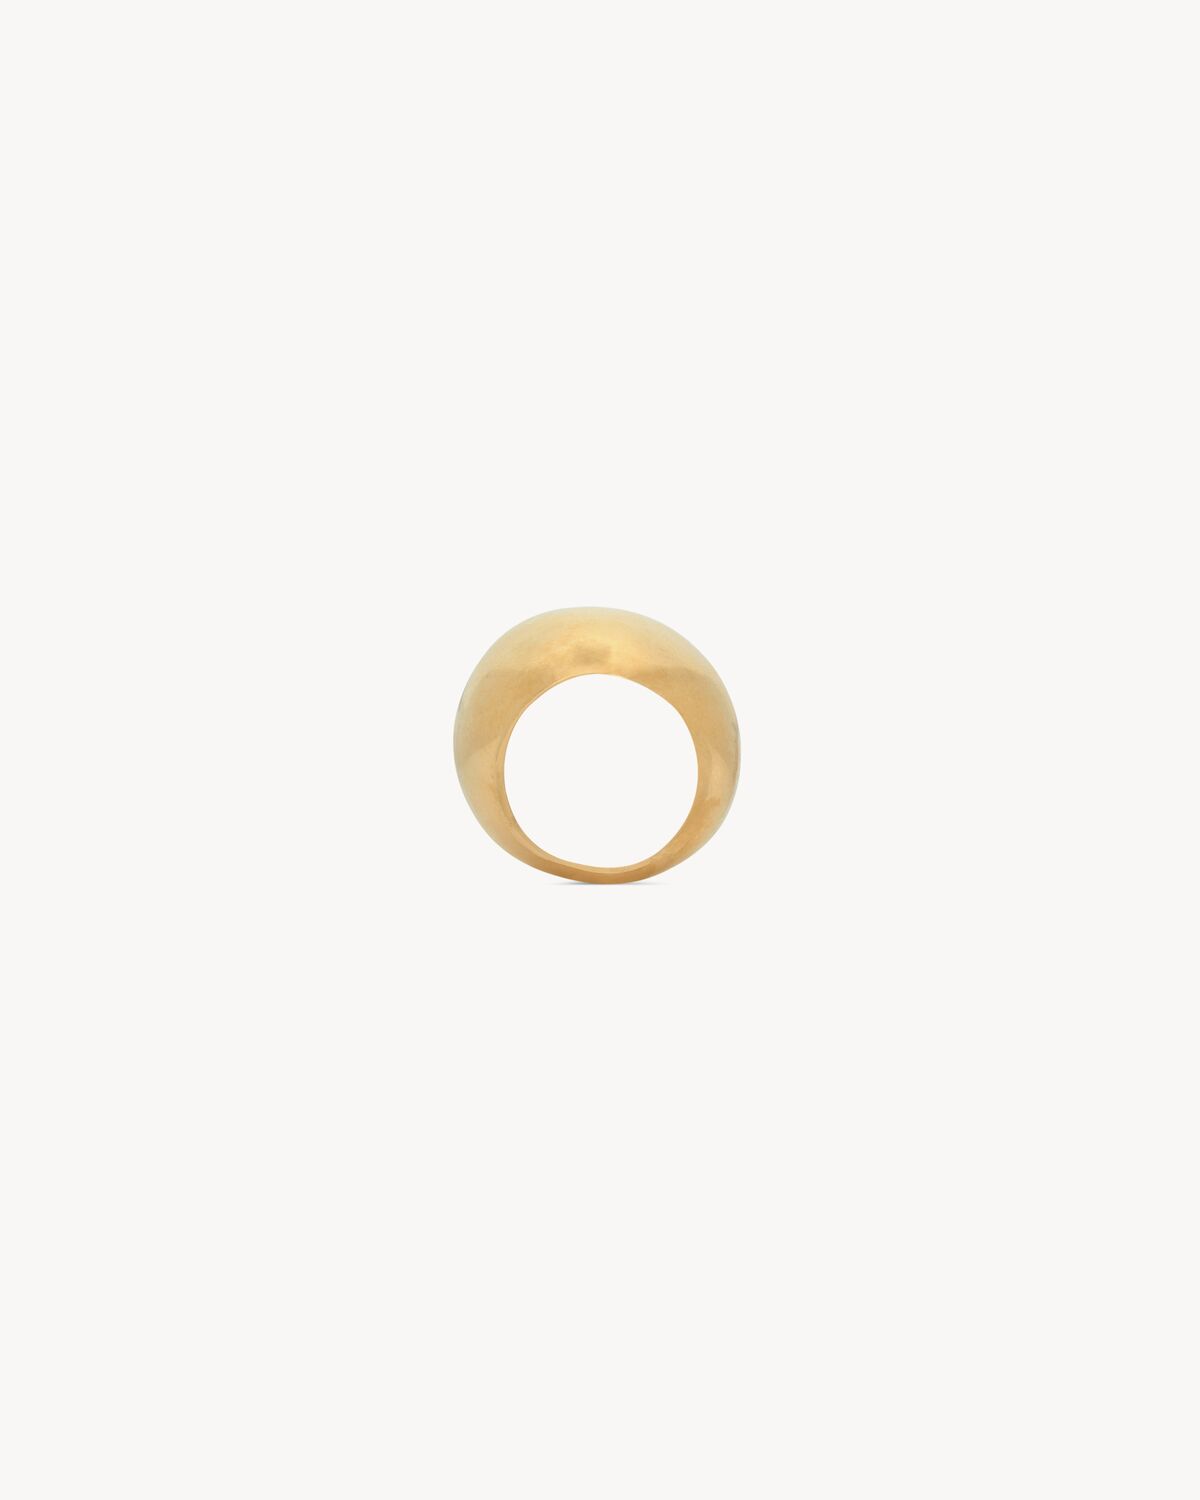 超大蛋形設計金屬戒指